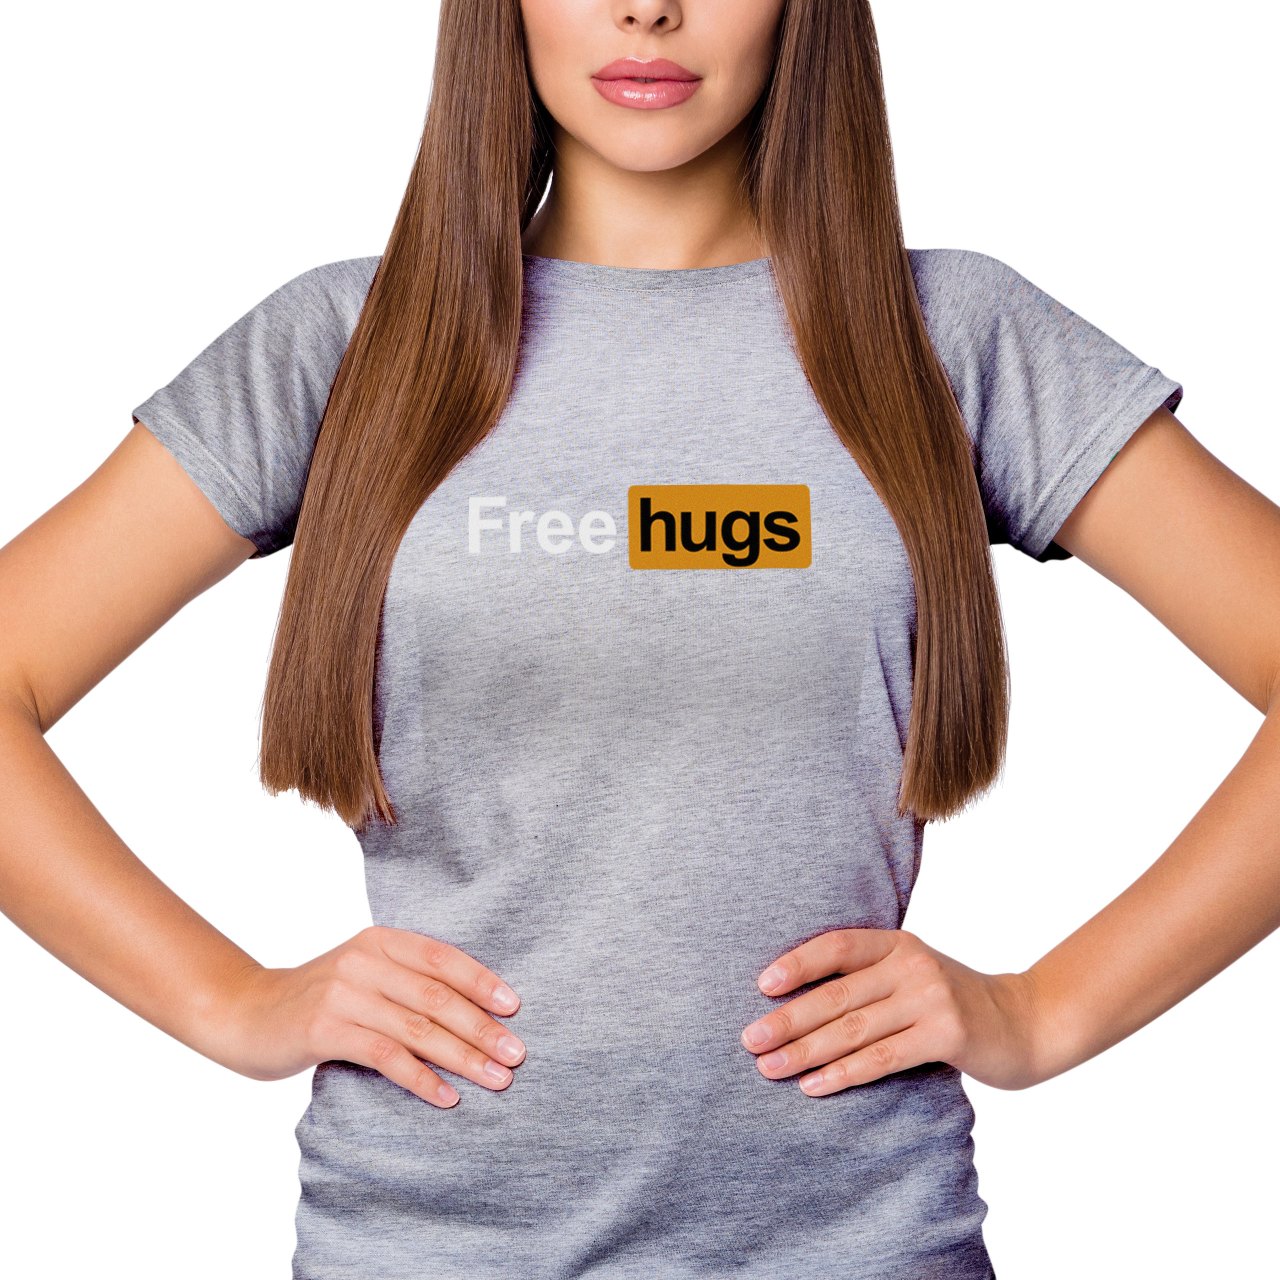 Dámské tričko s potiskem “Free hugs”